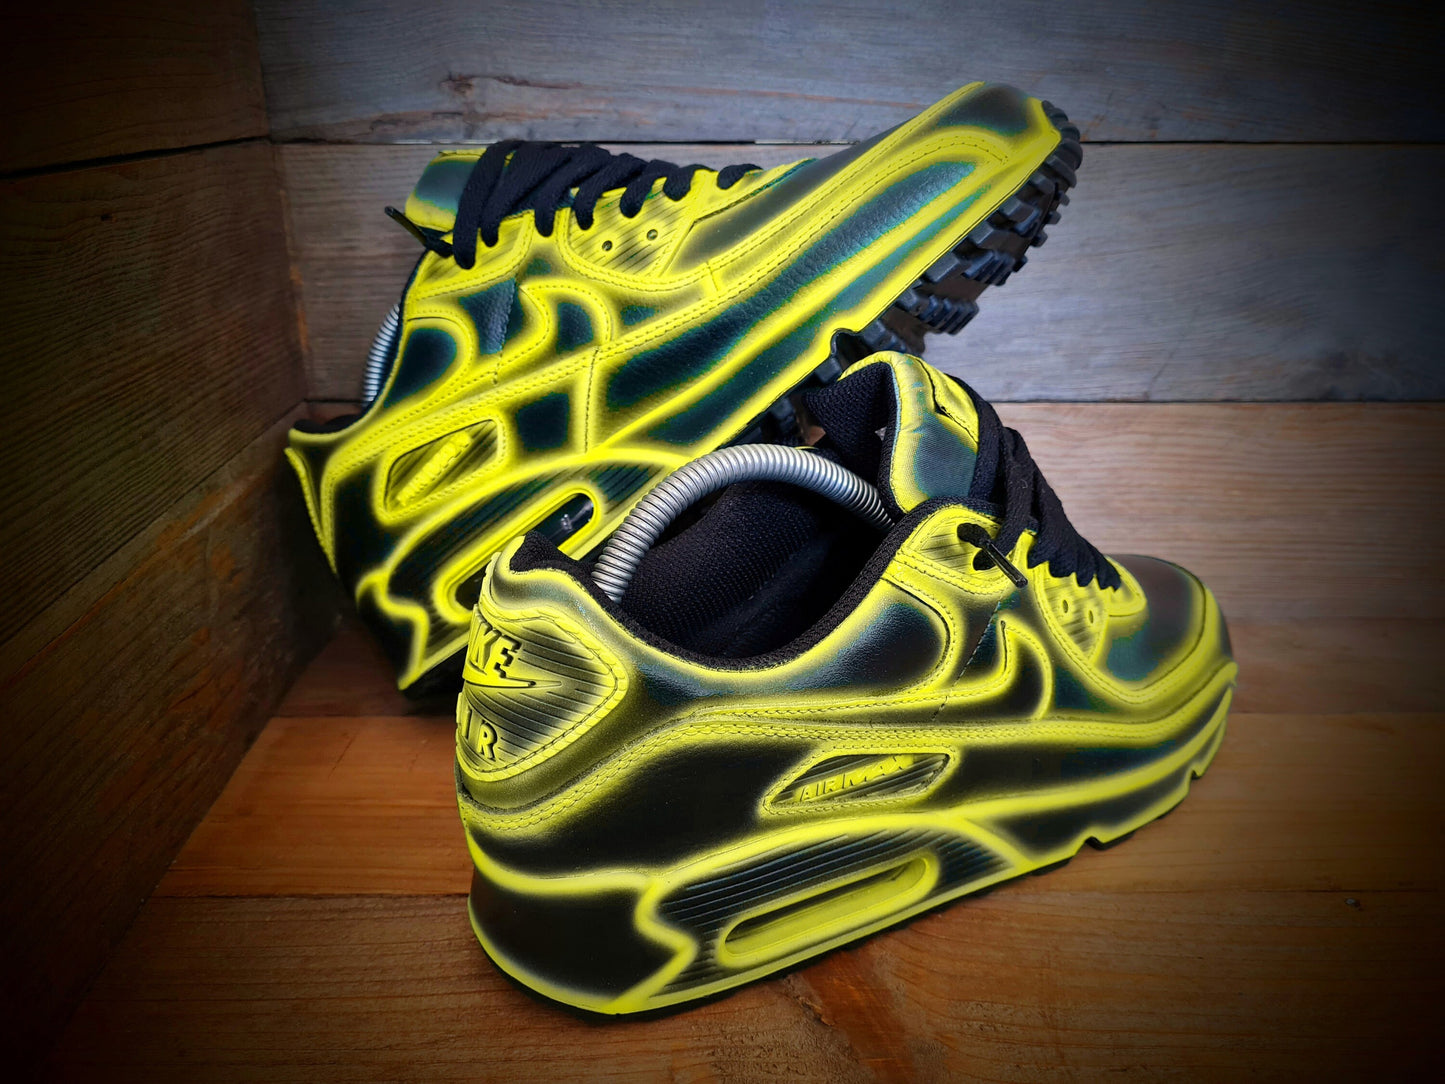 Custom Painted Air Max 90/Sneakers/Shoes/Kicks/Premium/Personalised/Yellow Cartoon